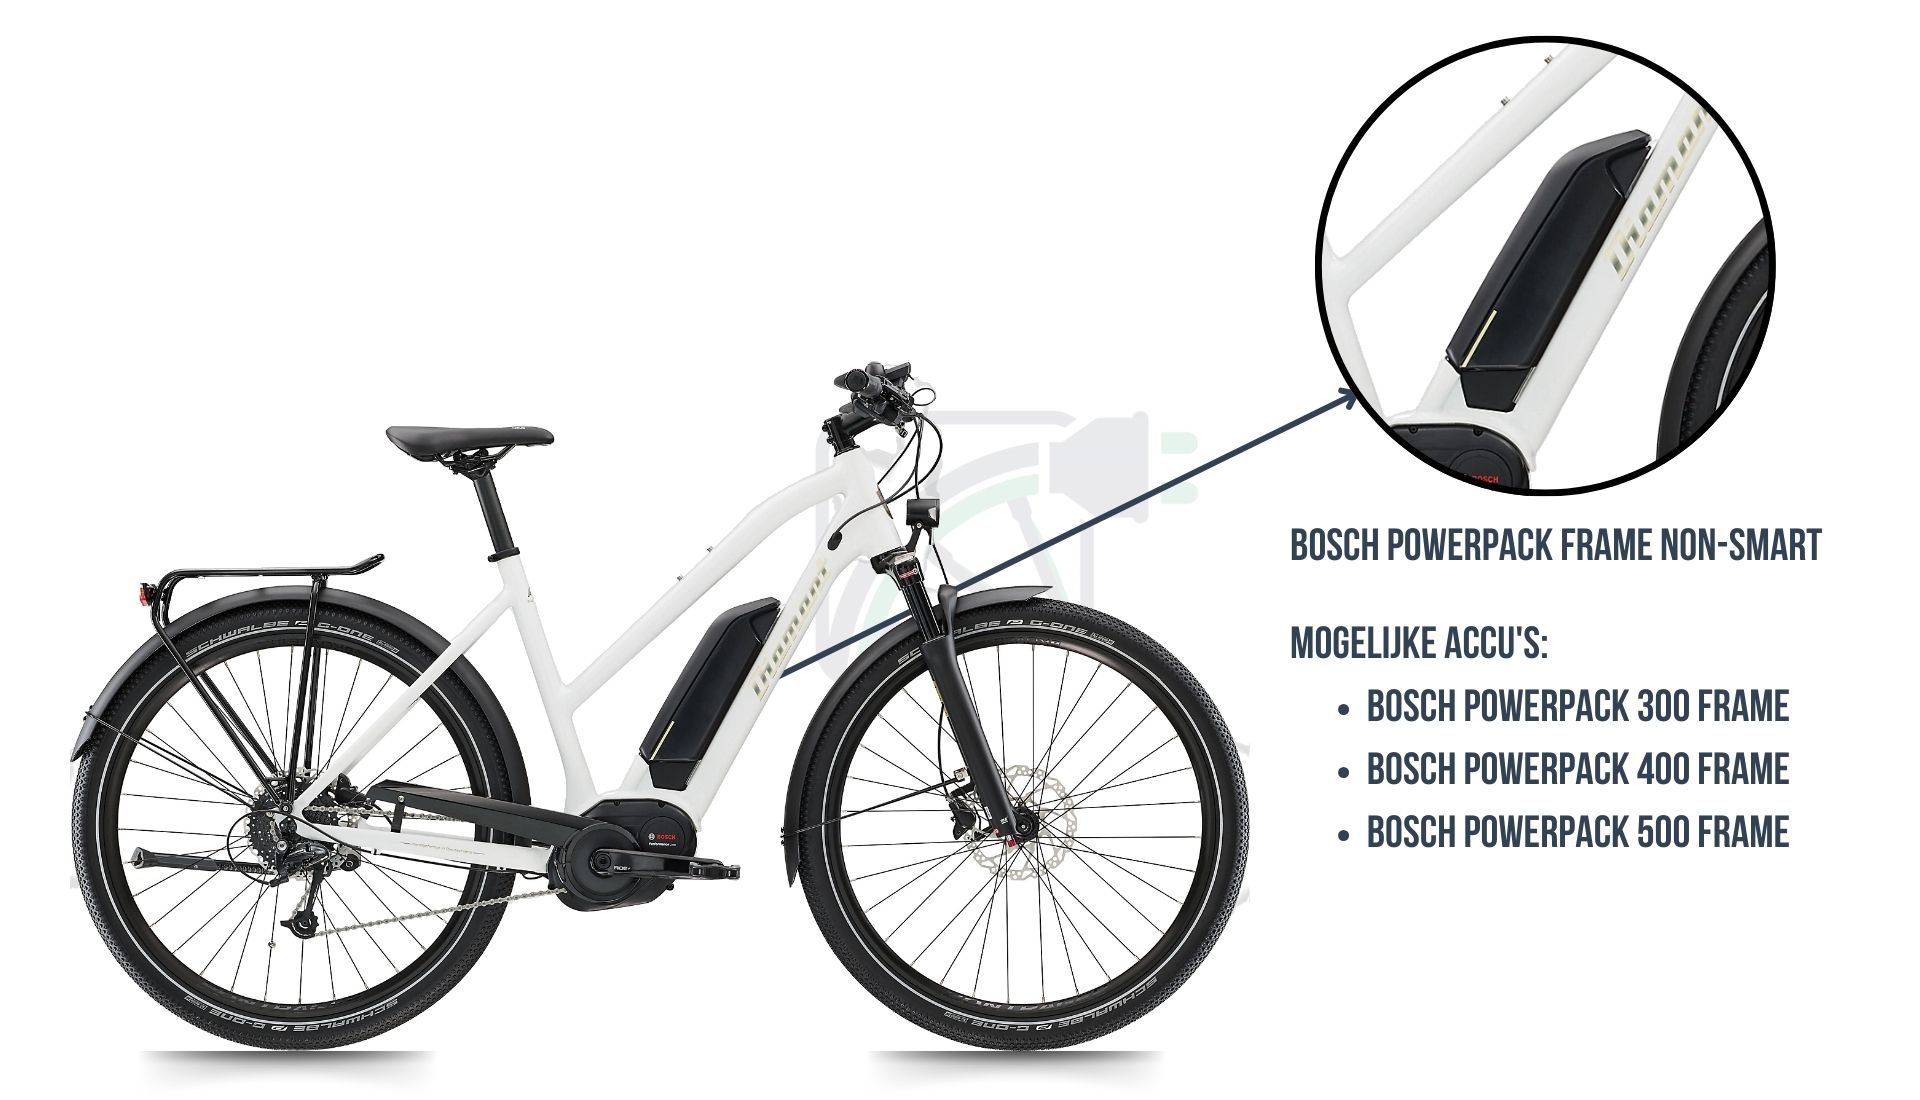 In questa immagine vedi la bicicletta elettrica Diamant Ubari, dove viene evidenziato quale batteria è quella giusta per questa bicicletta, ovvero la Bosch Powerpack 300/400/500 non-SMART frame.